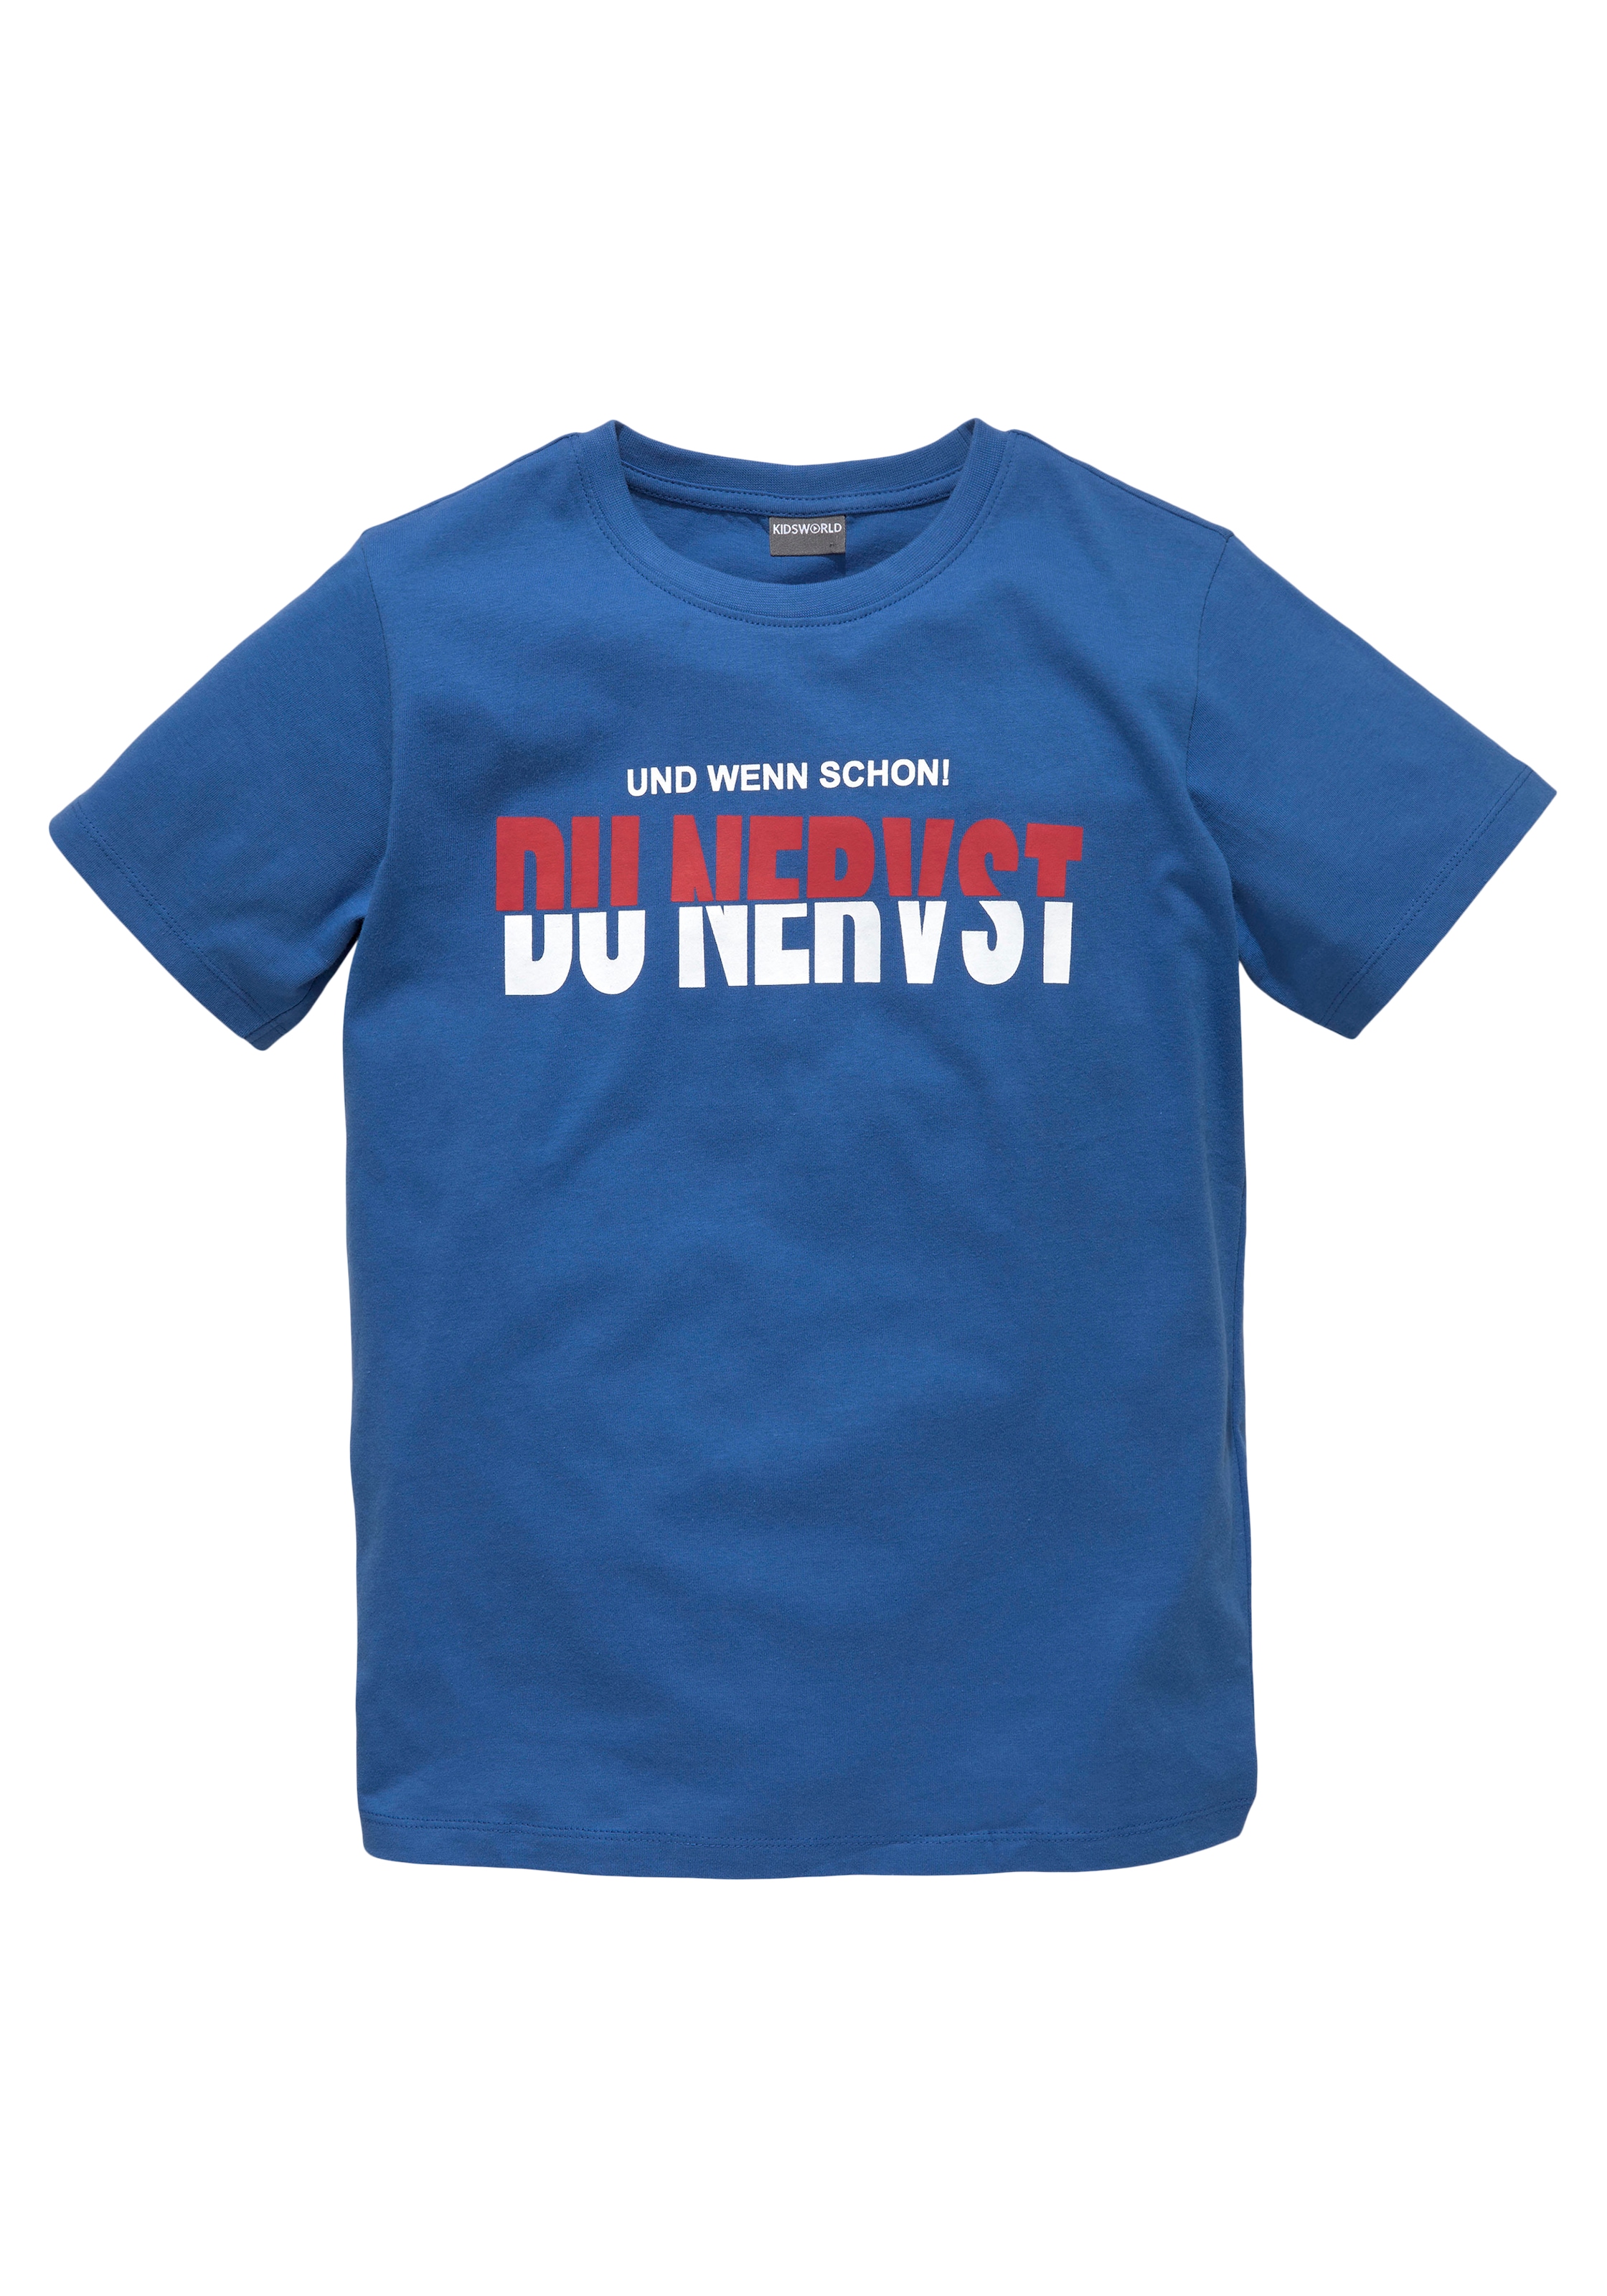 KIDSWORLD T-Shirt »DU NERVST«, Sprücheshirt bei OTTO